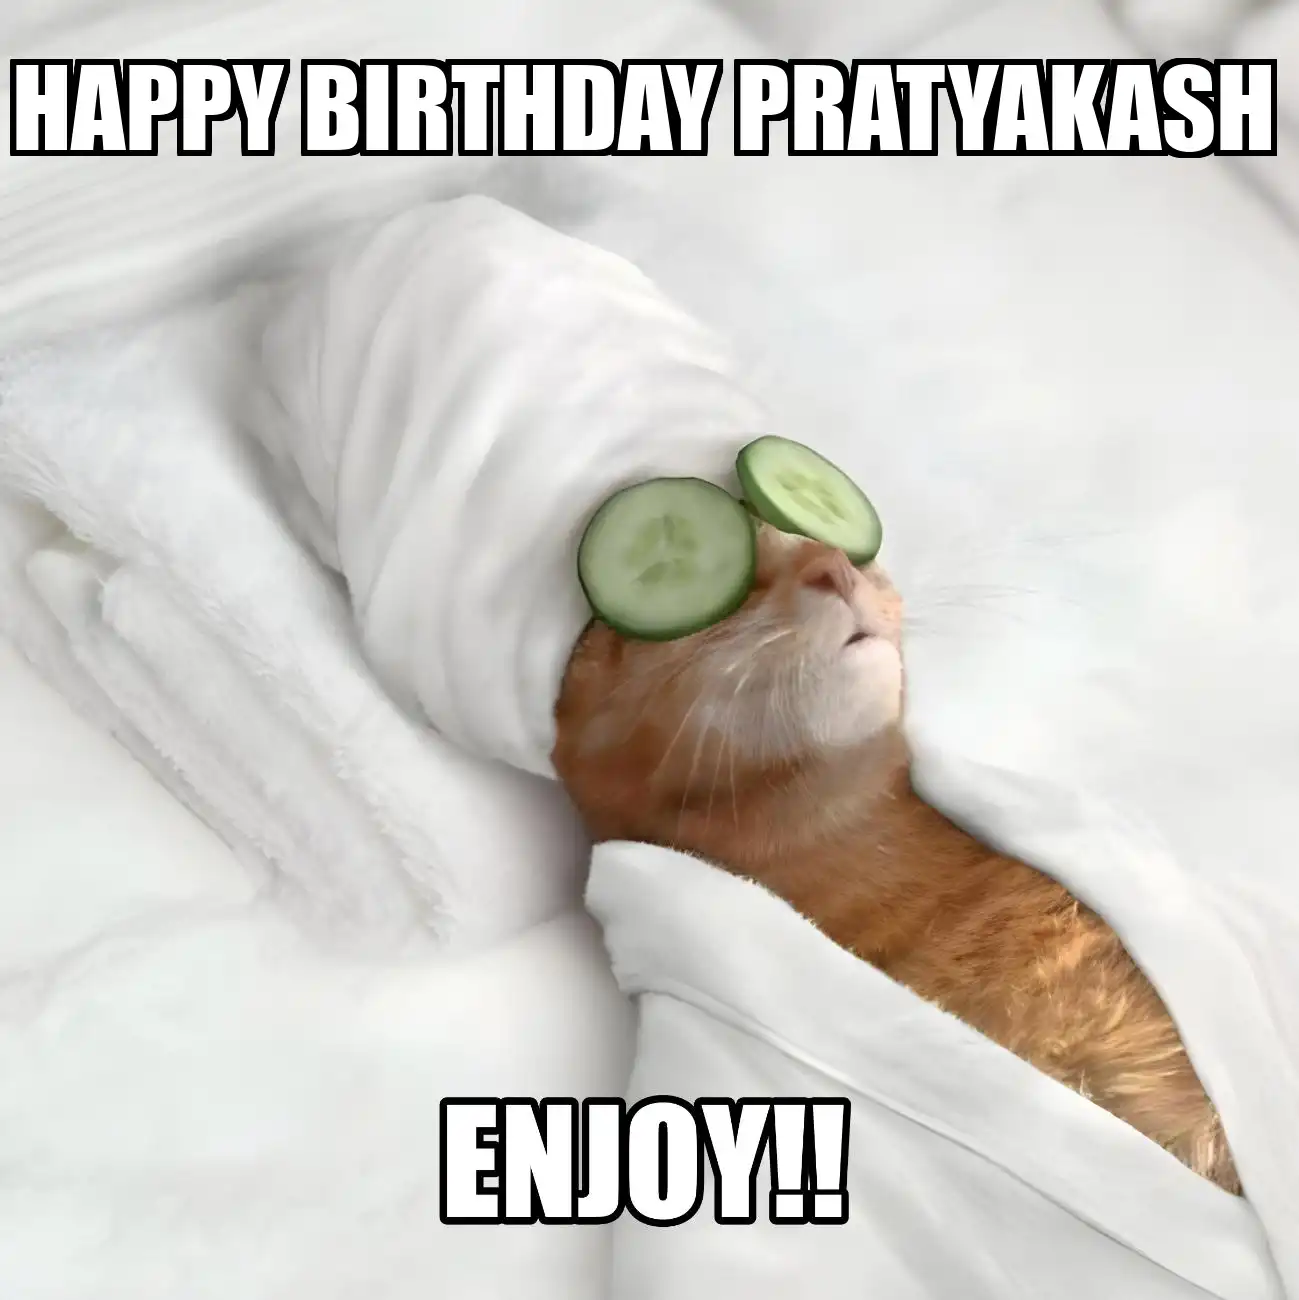 Happy Birthday Pratyakash Enjoy Cat Meme